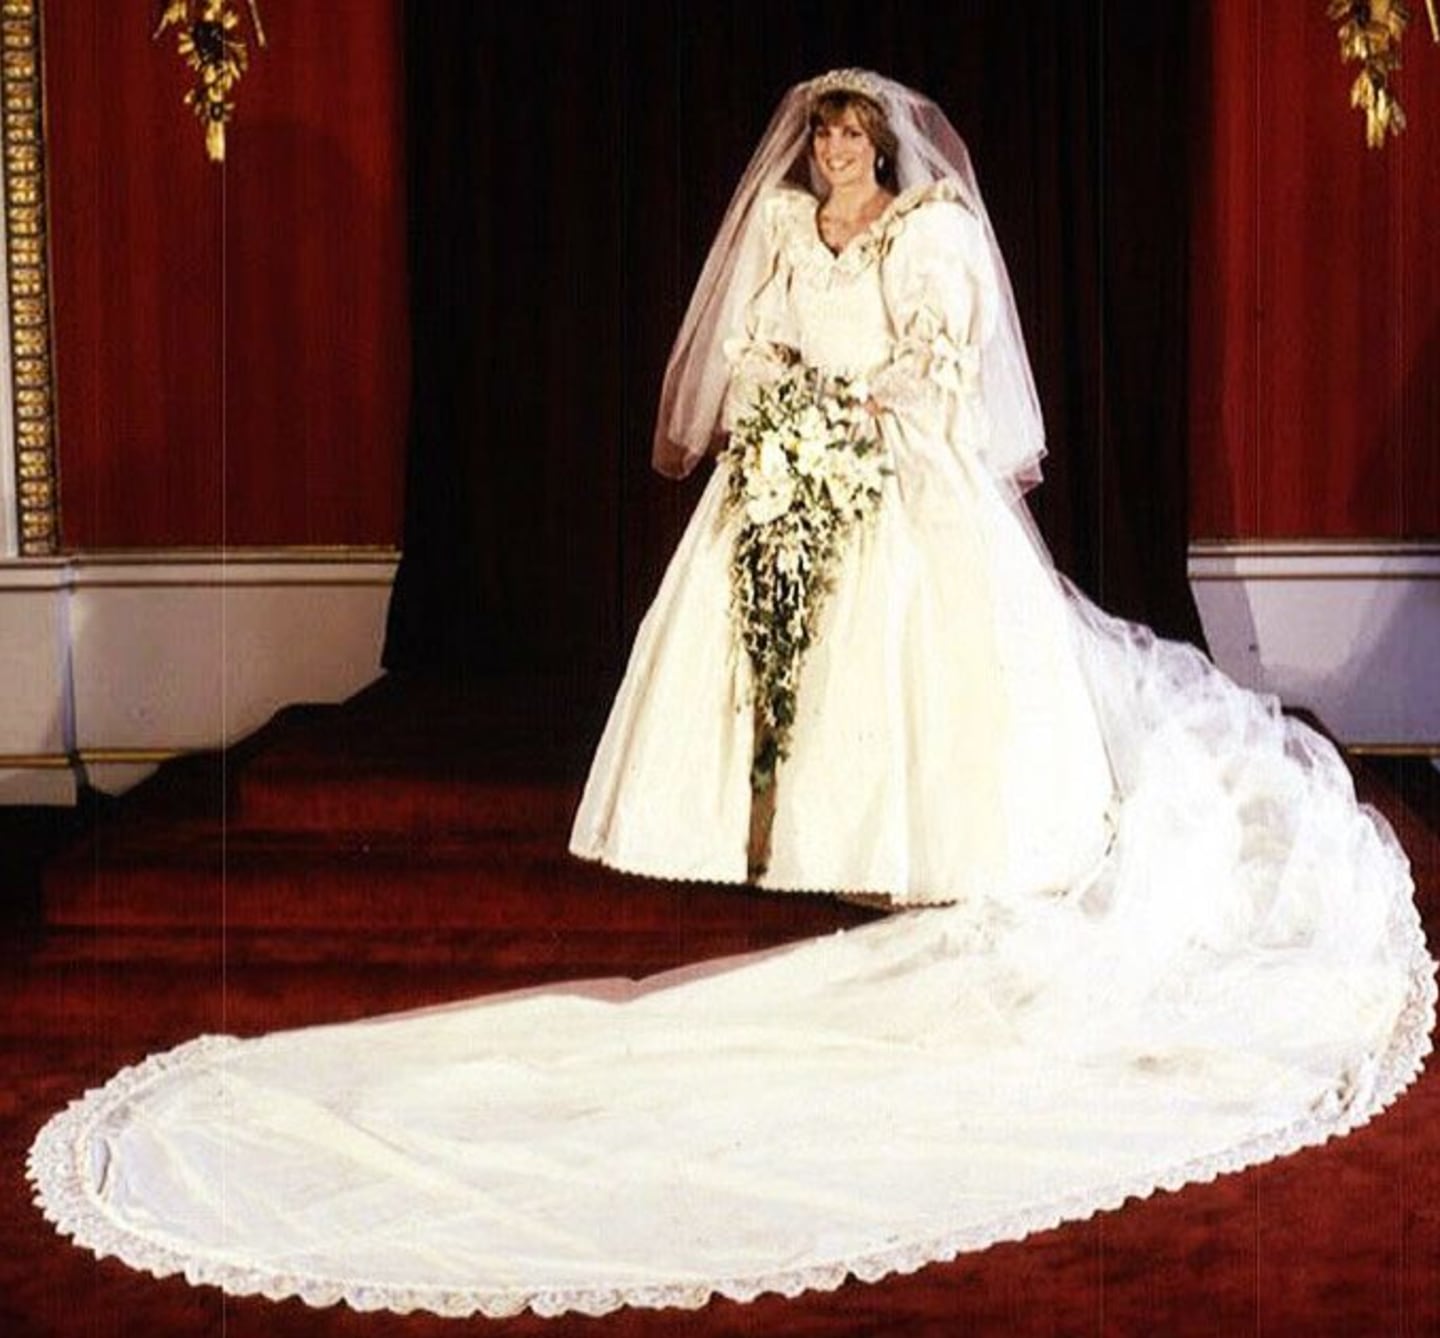 La boda de ensueño de la princesa Diana y el príncipe Carlos